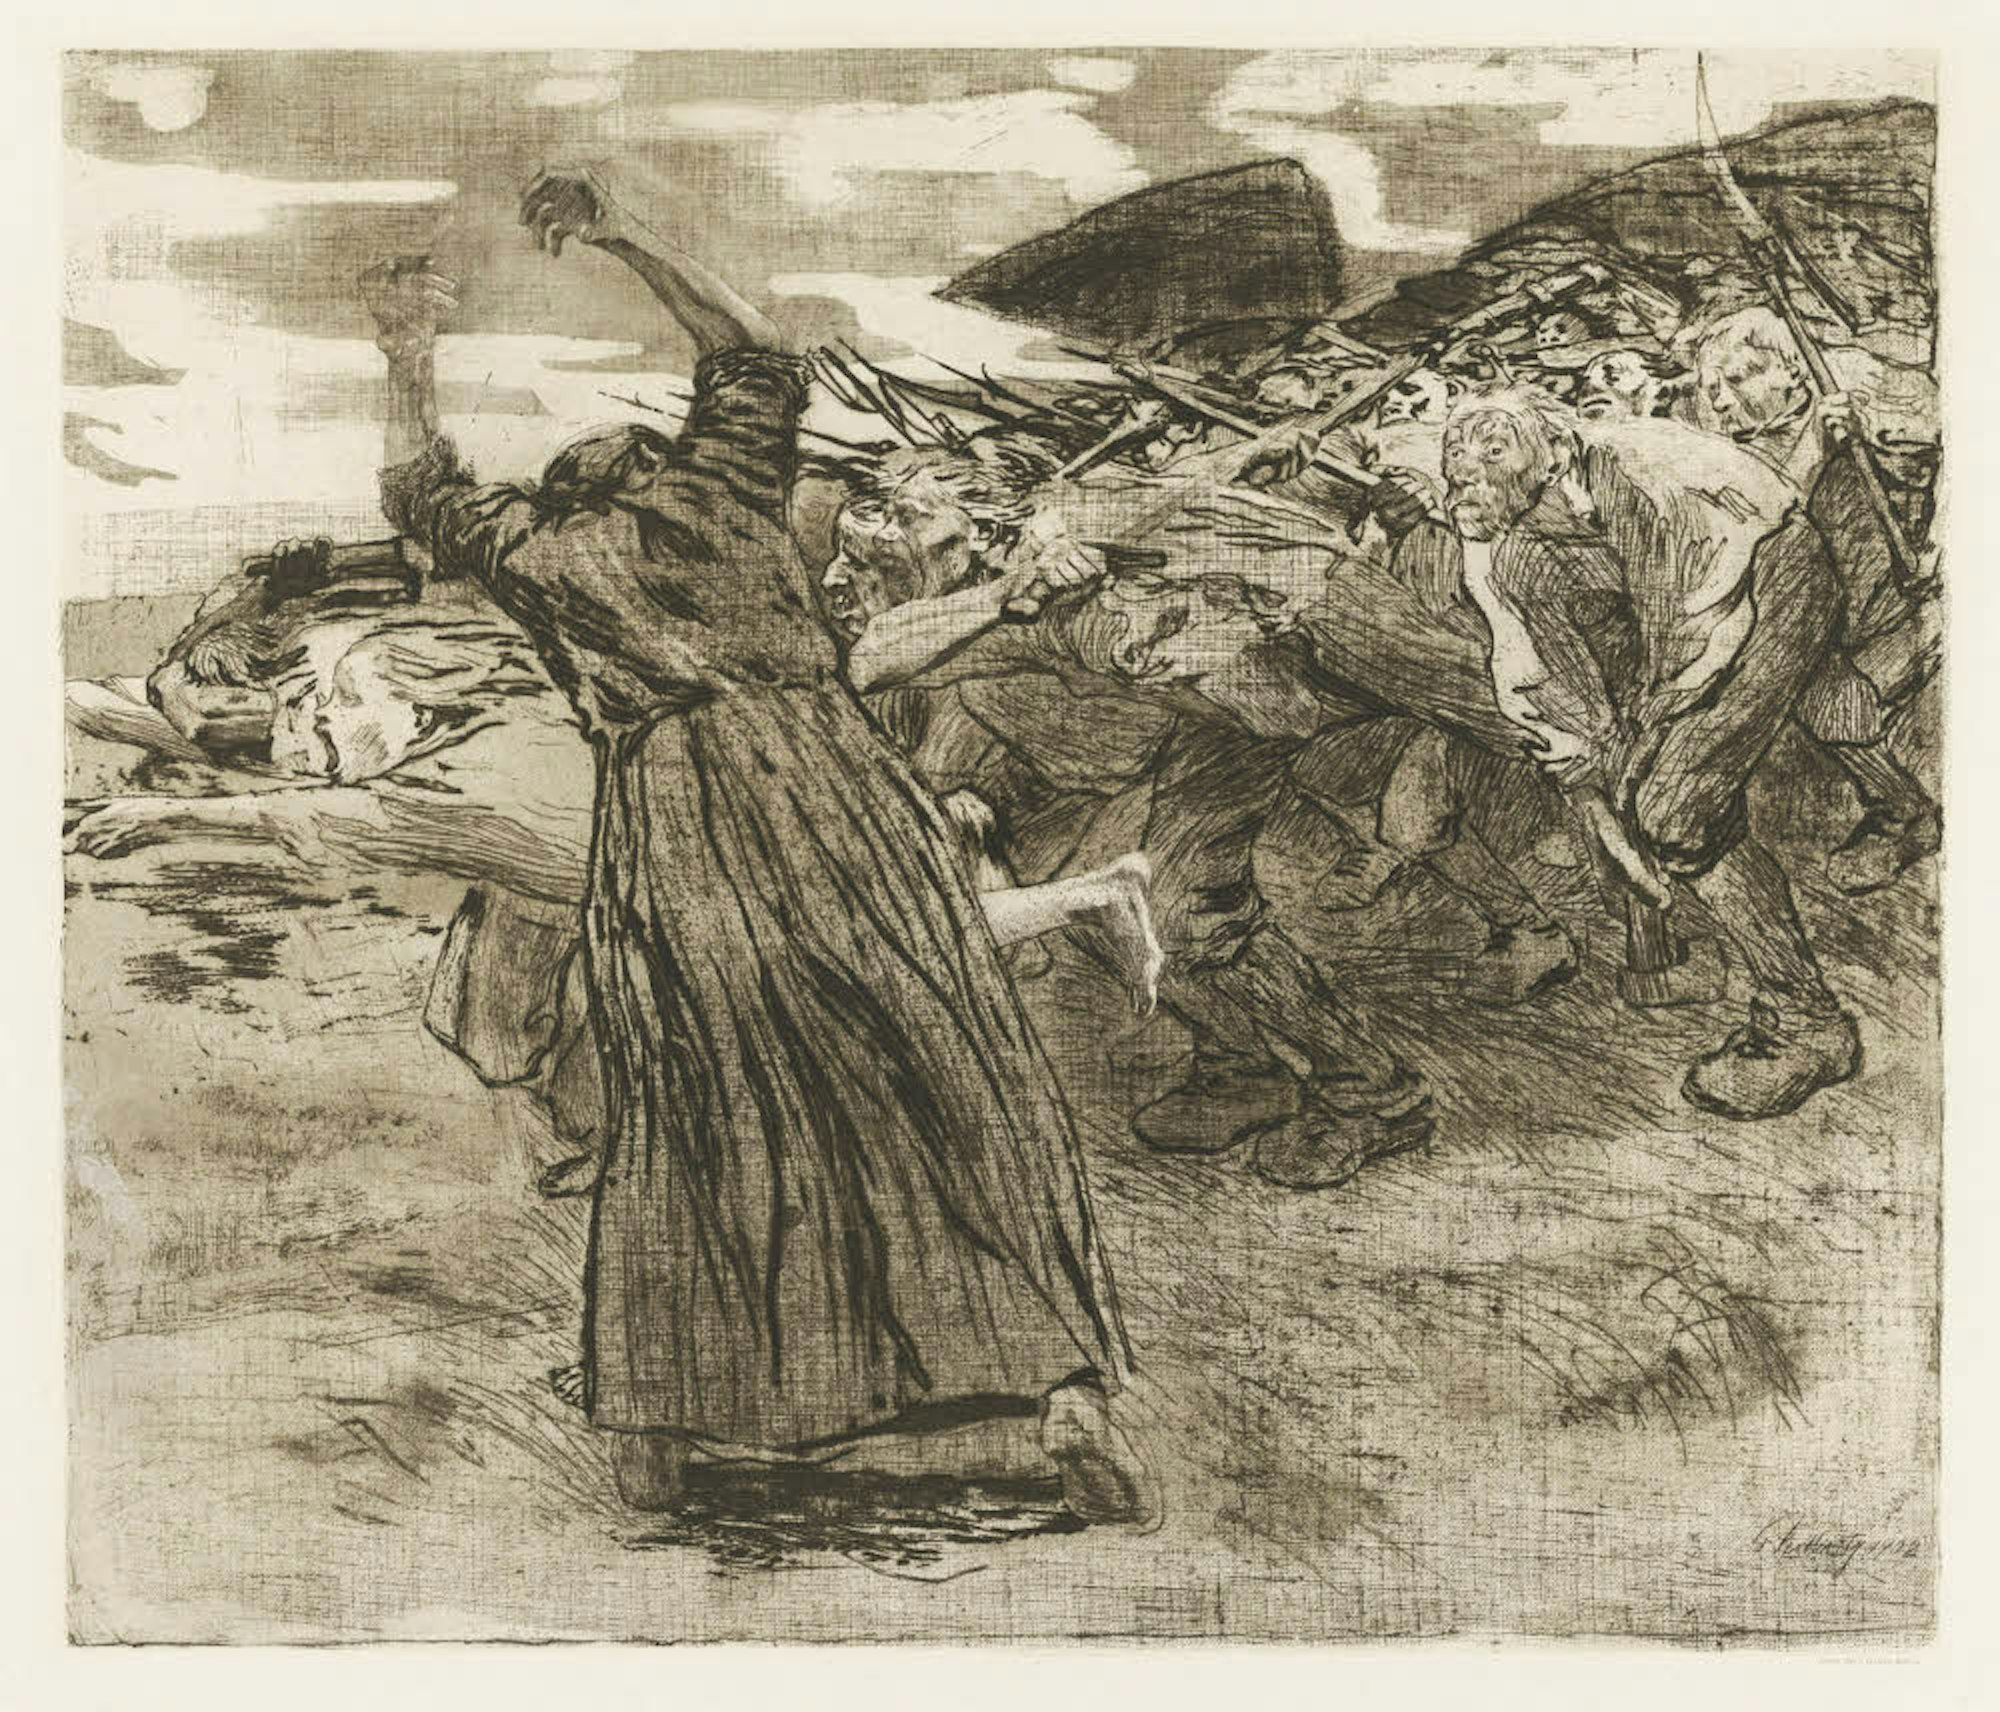 Die wütende Masse stürzt voran und trägt doch individuelle Züge. „Losbruch“ aus dem „Bauernkrieg“-Zyklus (1902/03) zeigt die kämpferische Kollwitz auf der Höhe ihrer Kunst.